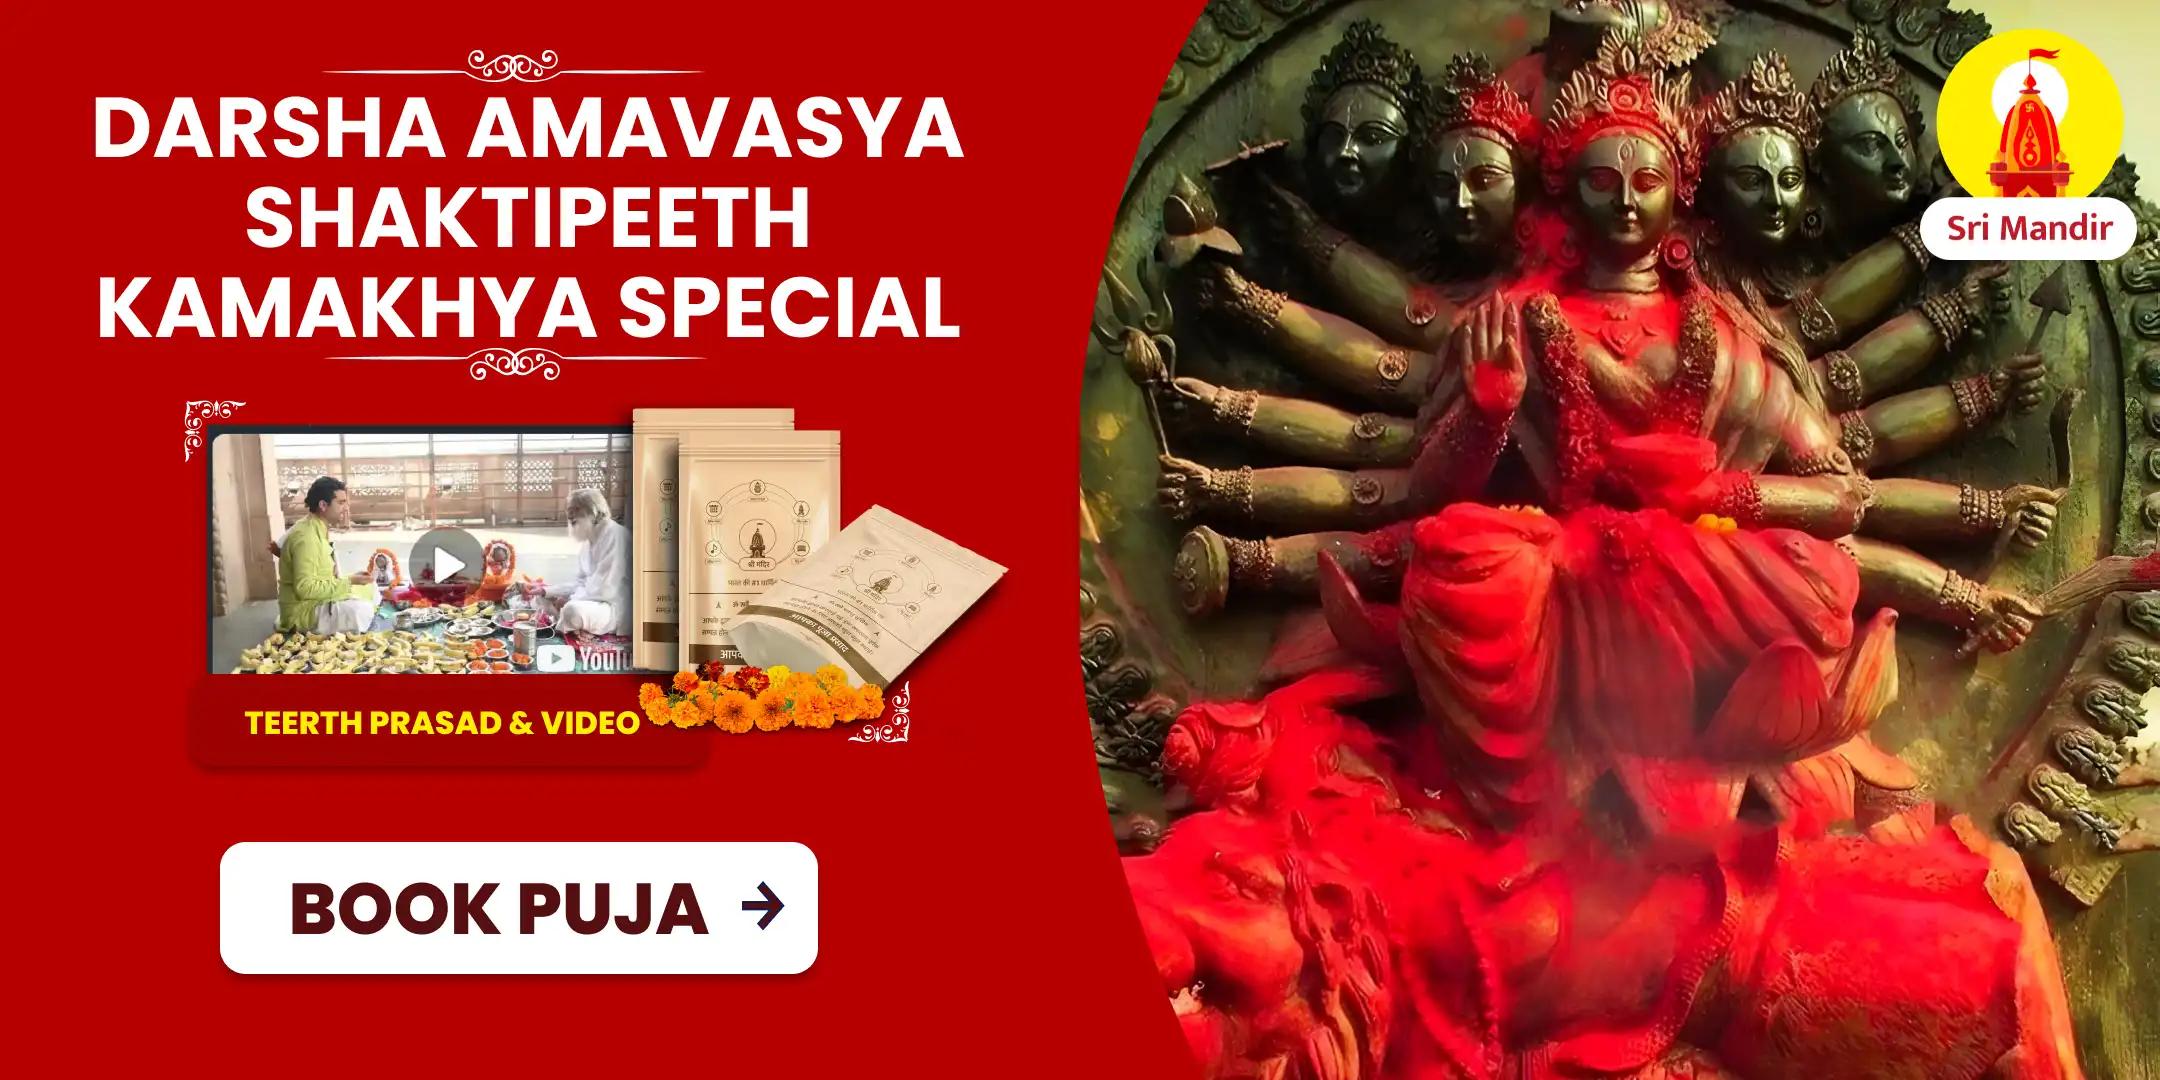 Darsha Amavasya Shaktipeeth Special Maa Kamakhya Tantrokta Maha Yagya To Achieve Bliss in Relationship and Resolve Conflicts